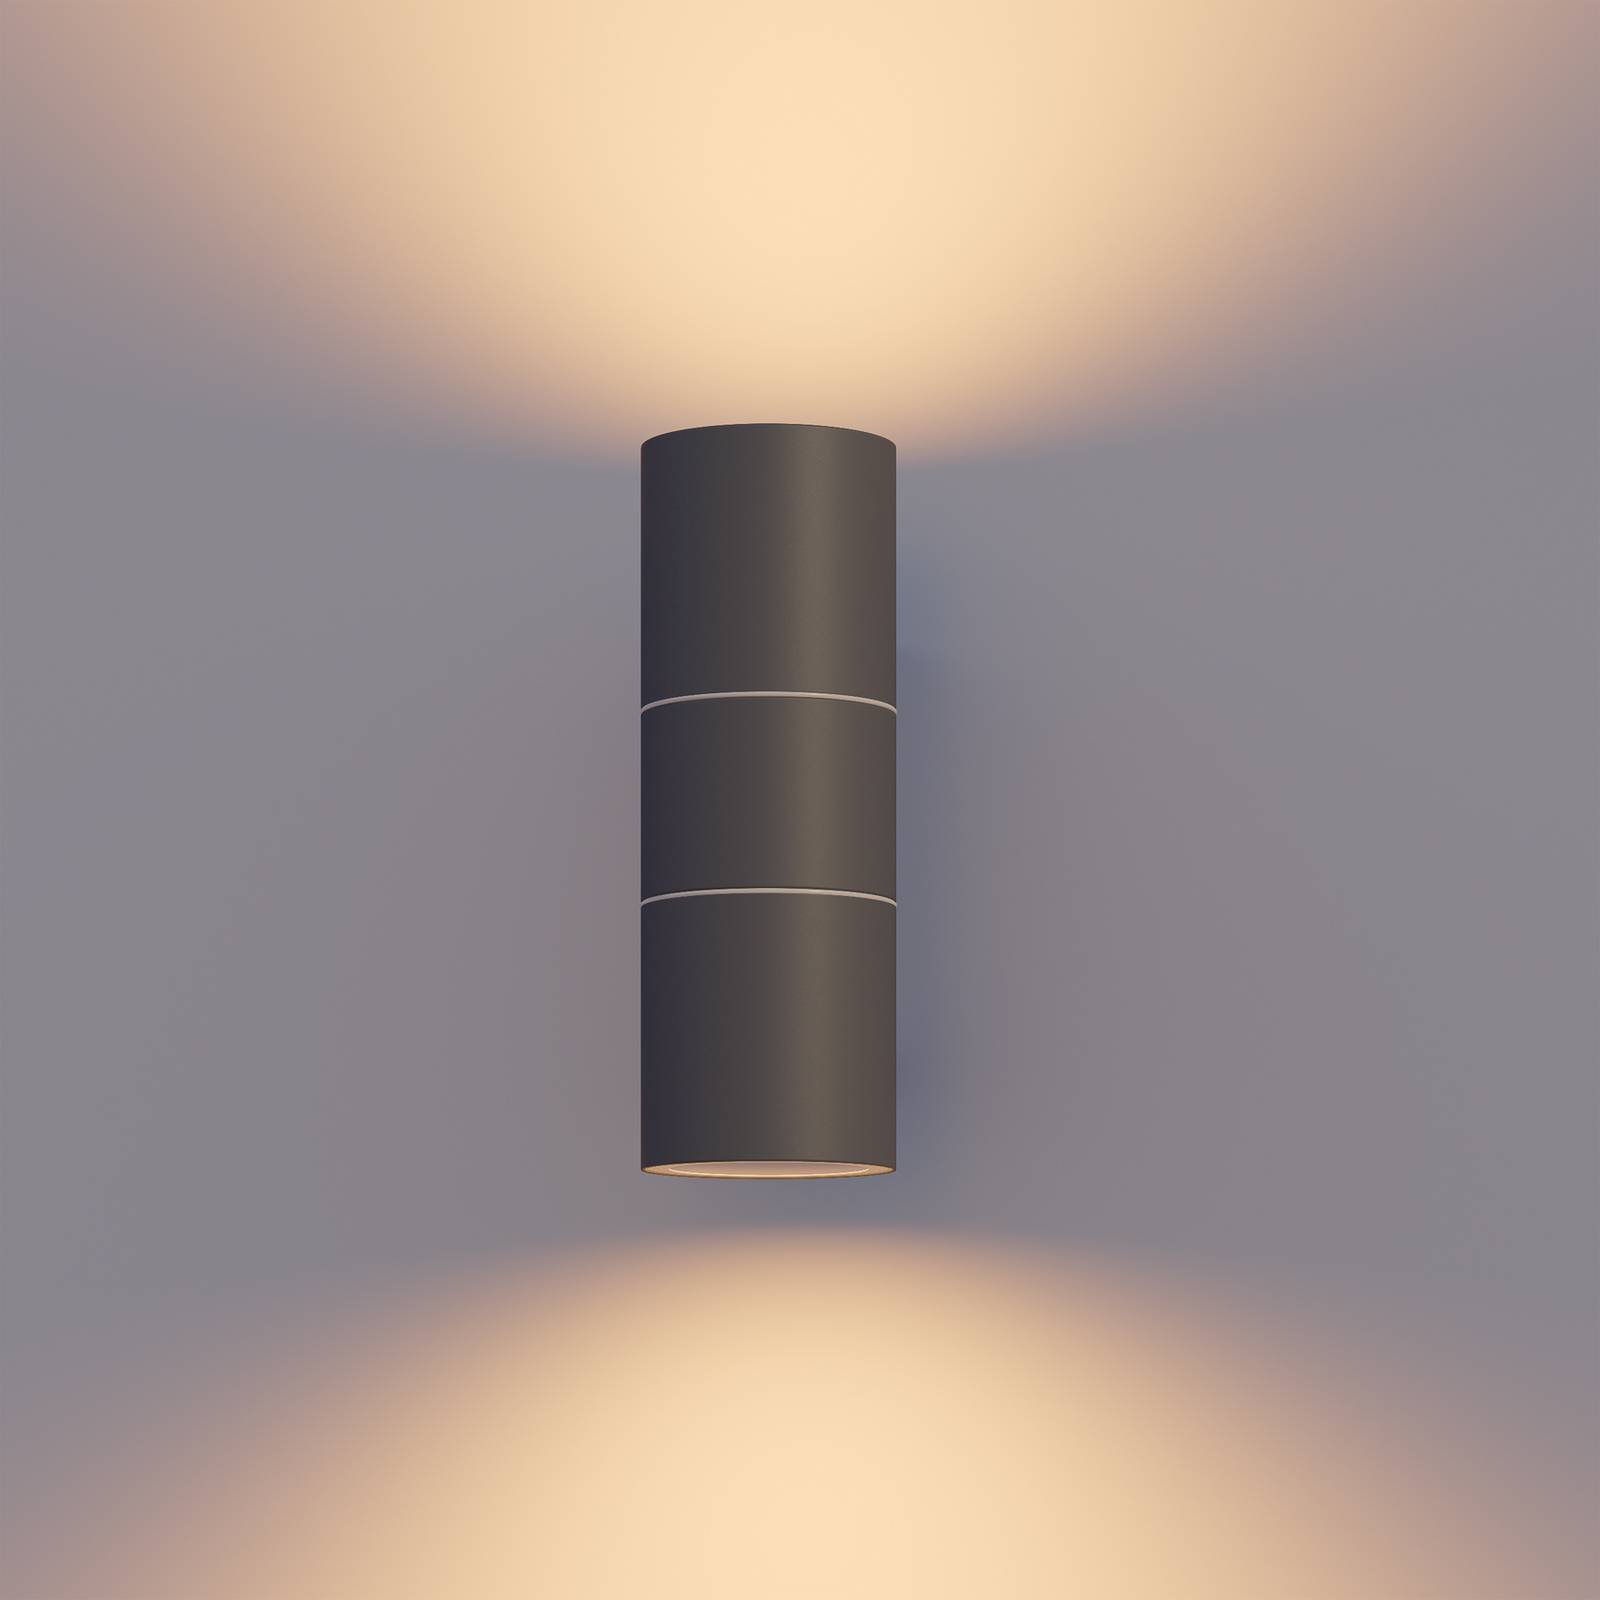 Calex vanjska zidna svjetiljka GU10 inox gore/dolje 17 cm, antracit